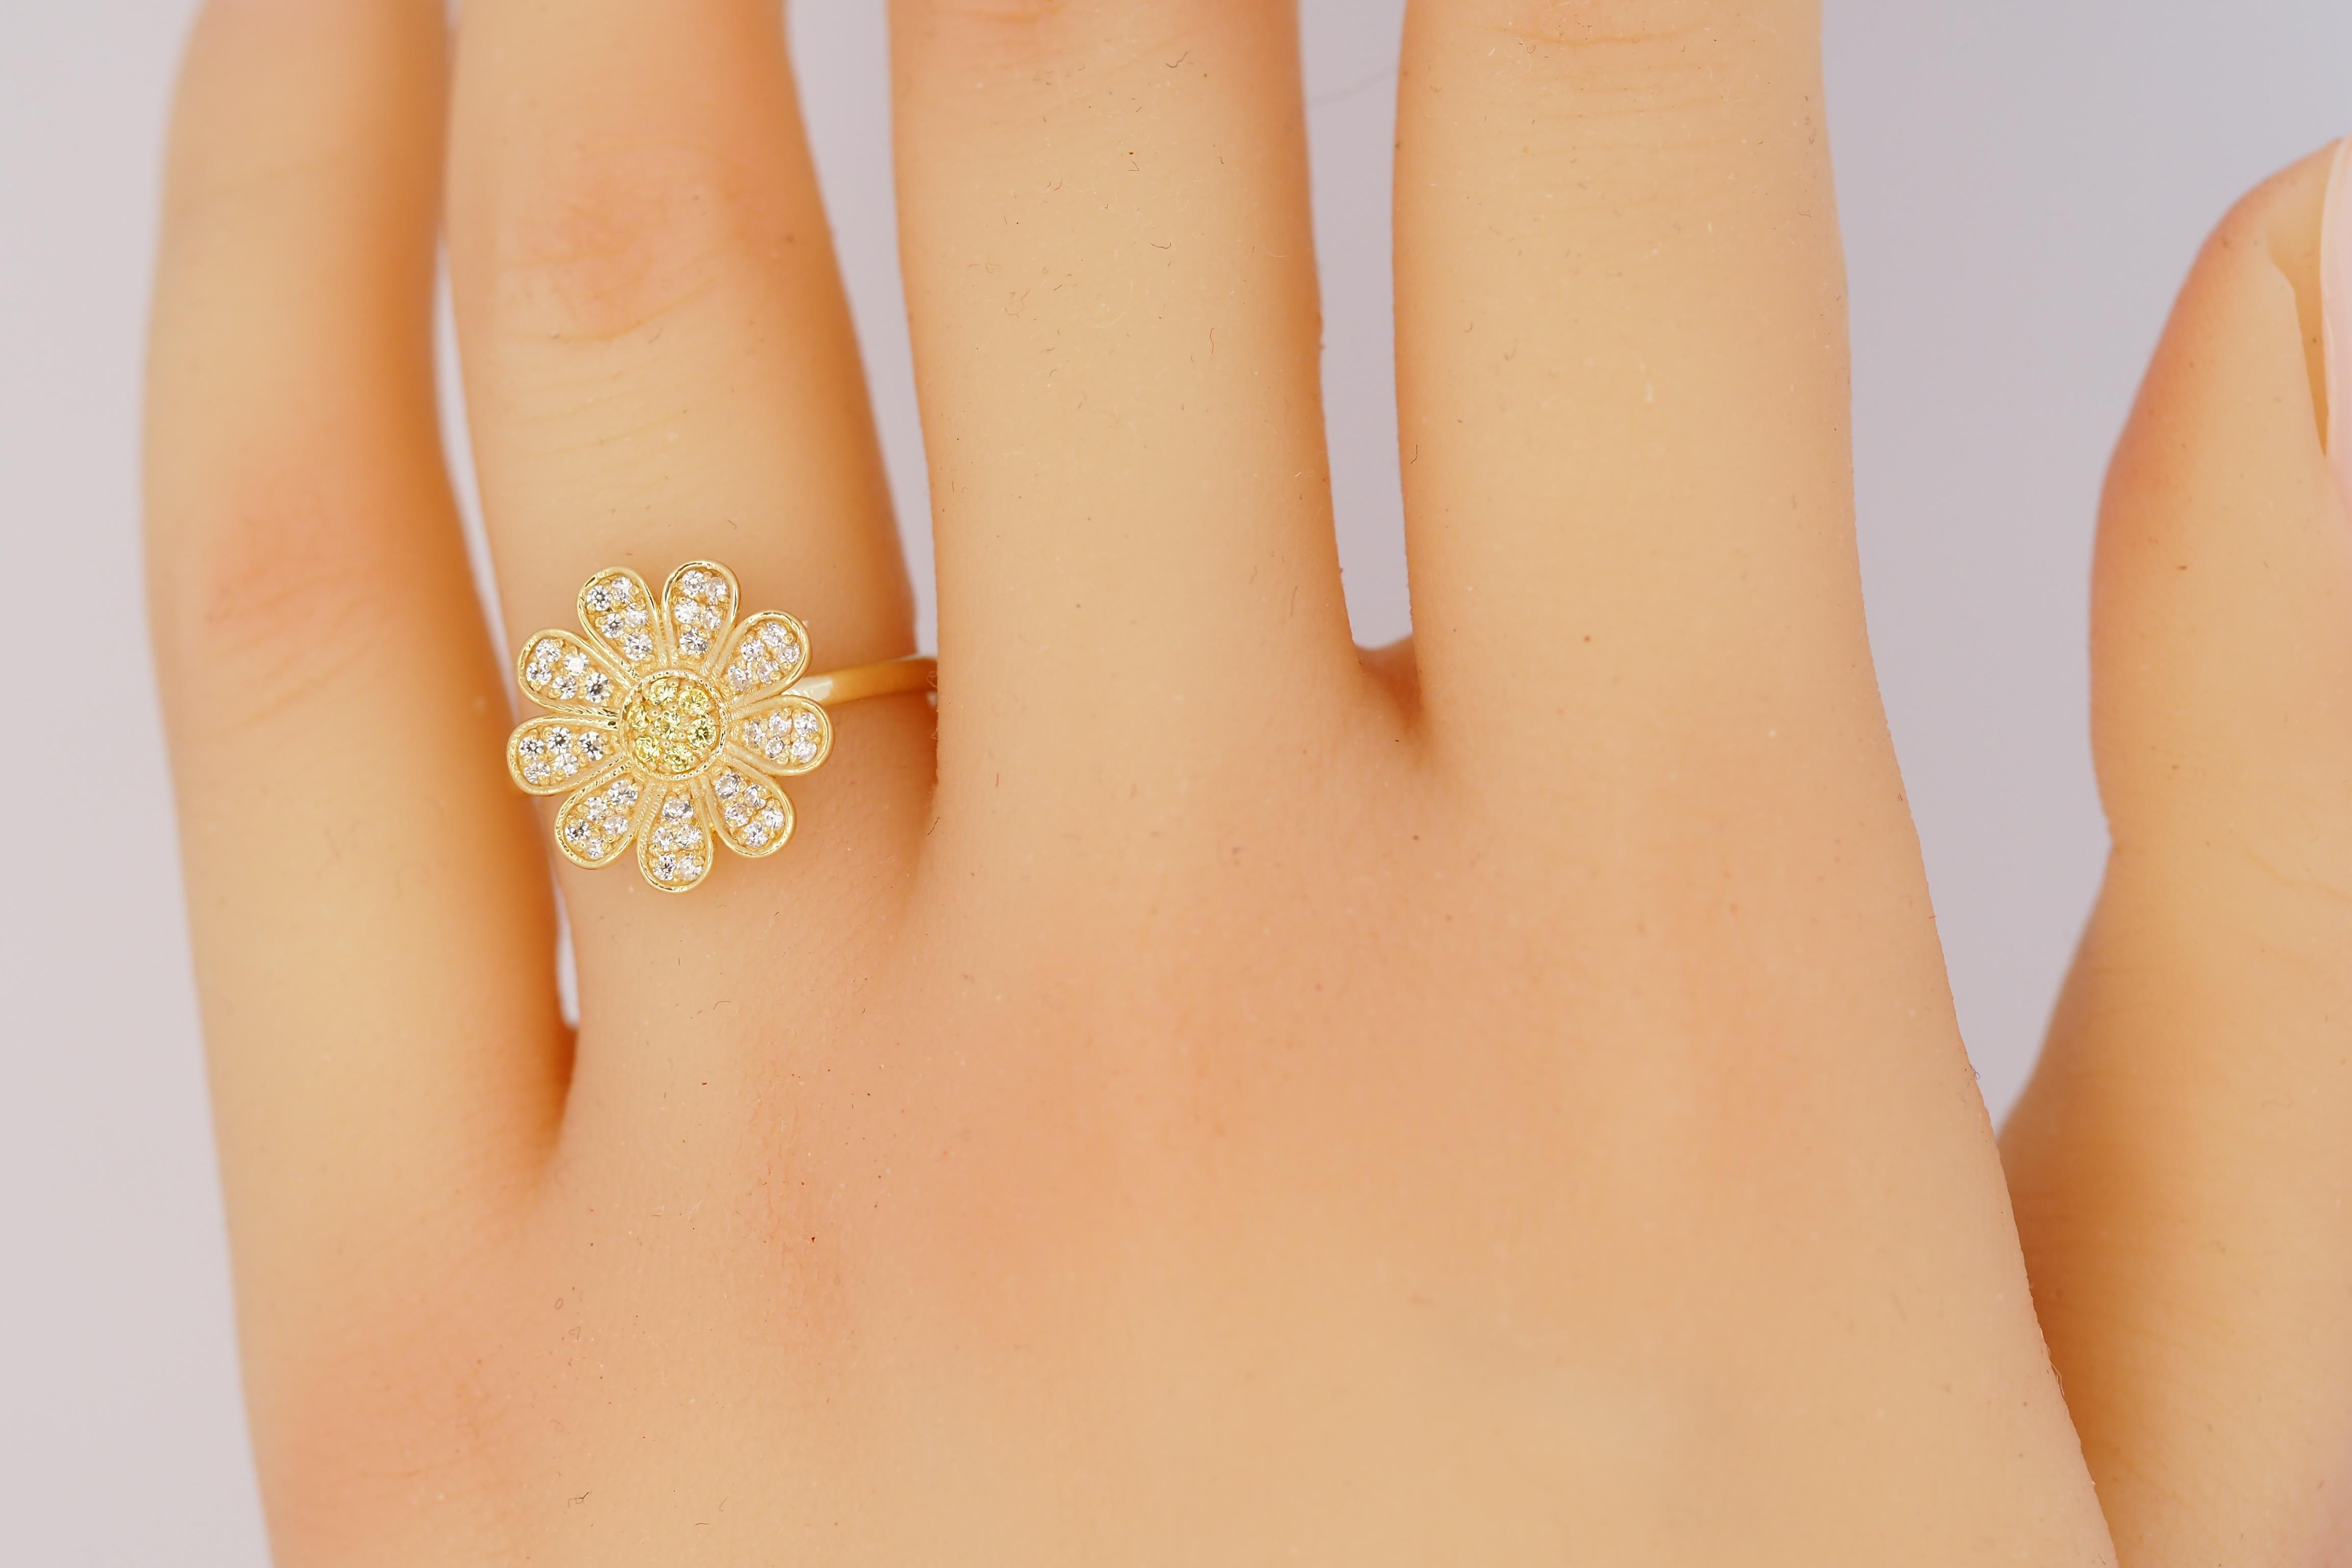 For Sale:  Daisy flower 14k gold ring.  7